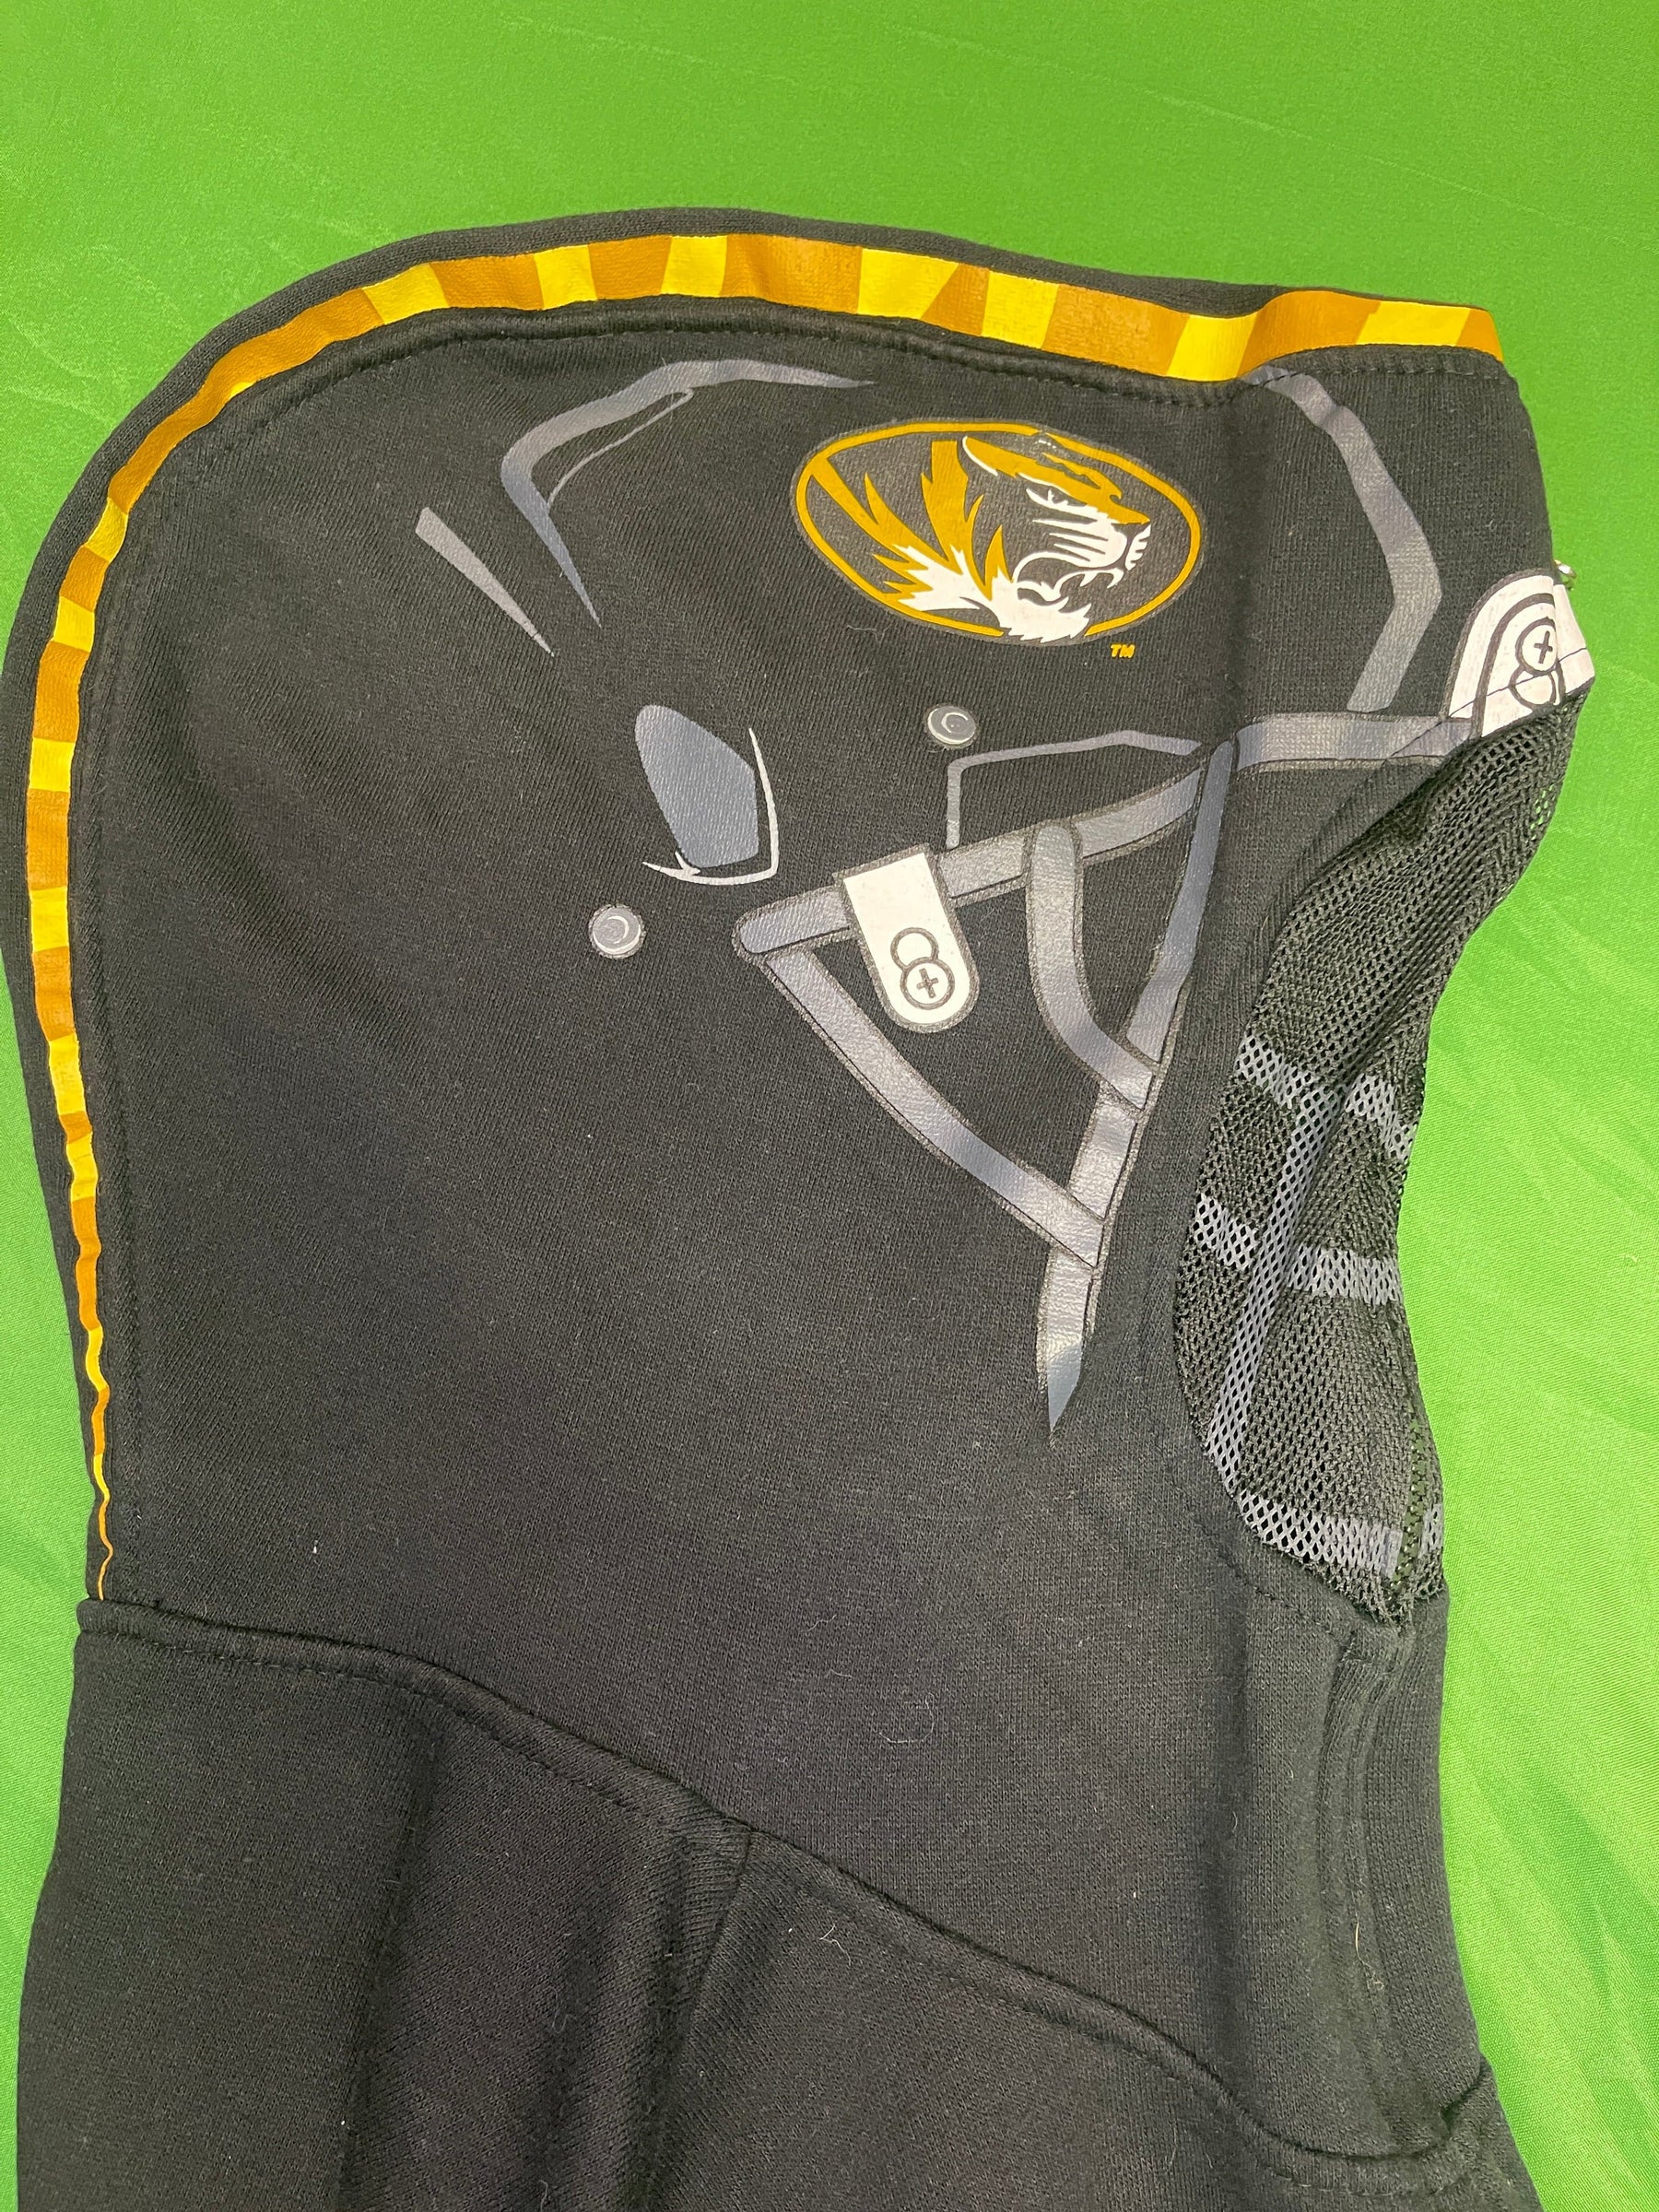 NCAA Missouri Tigers Helmet Style Full-Zip Hoodie Youth Large 14-16